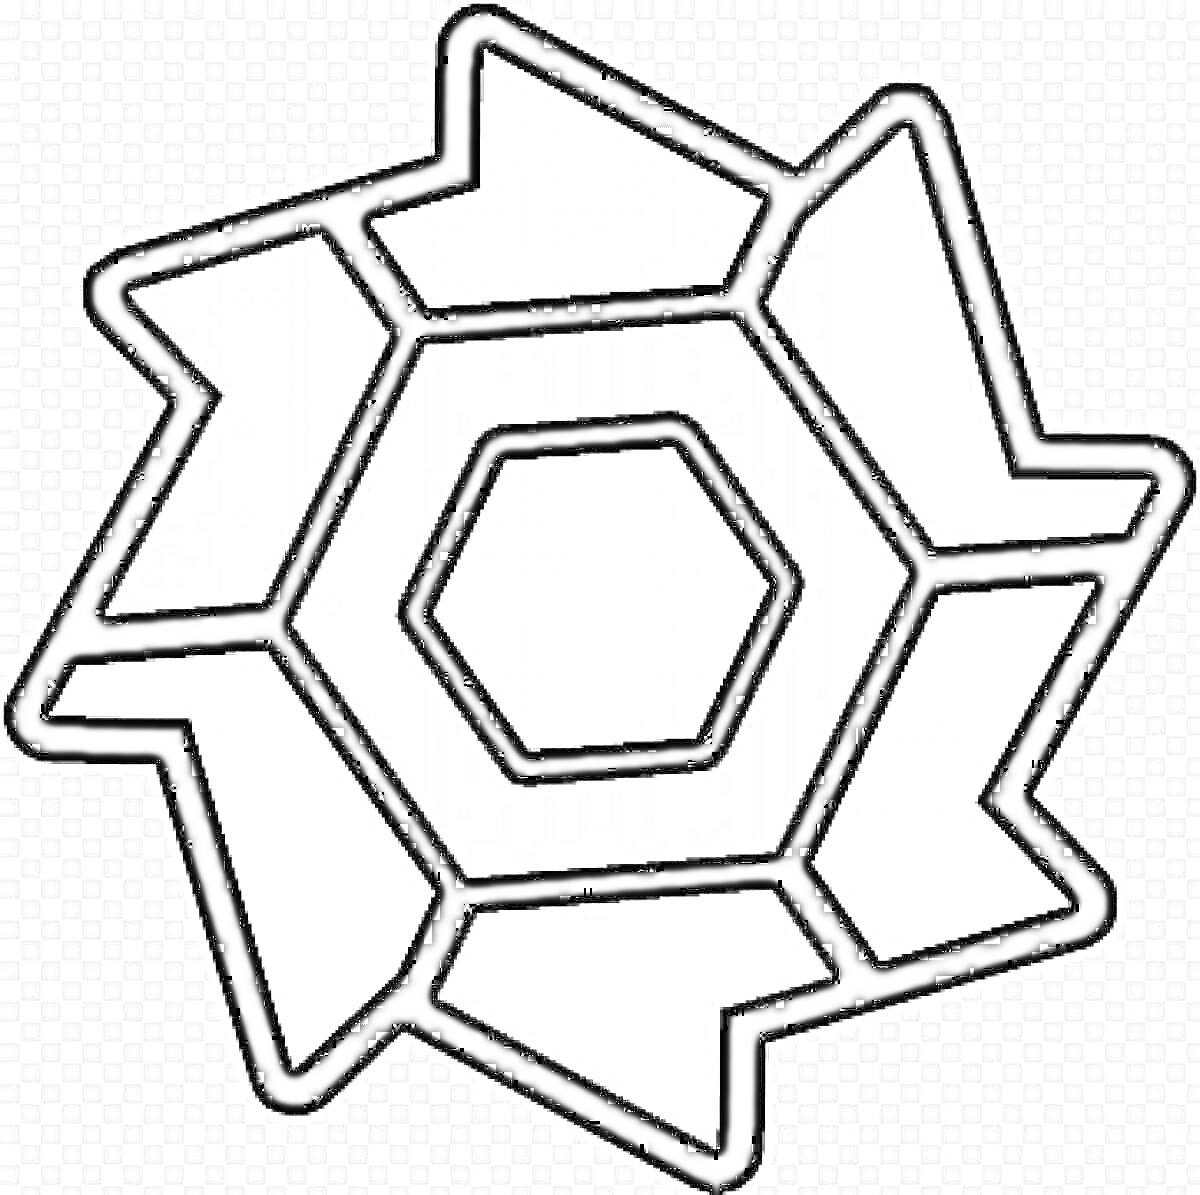 Раскраска Геометрическая фигура в стиле Geometry Dash с центральным шестиугольником и окружающими трапециями